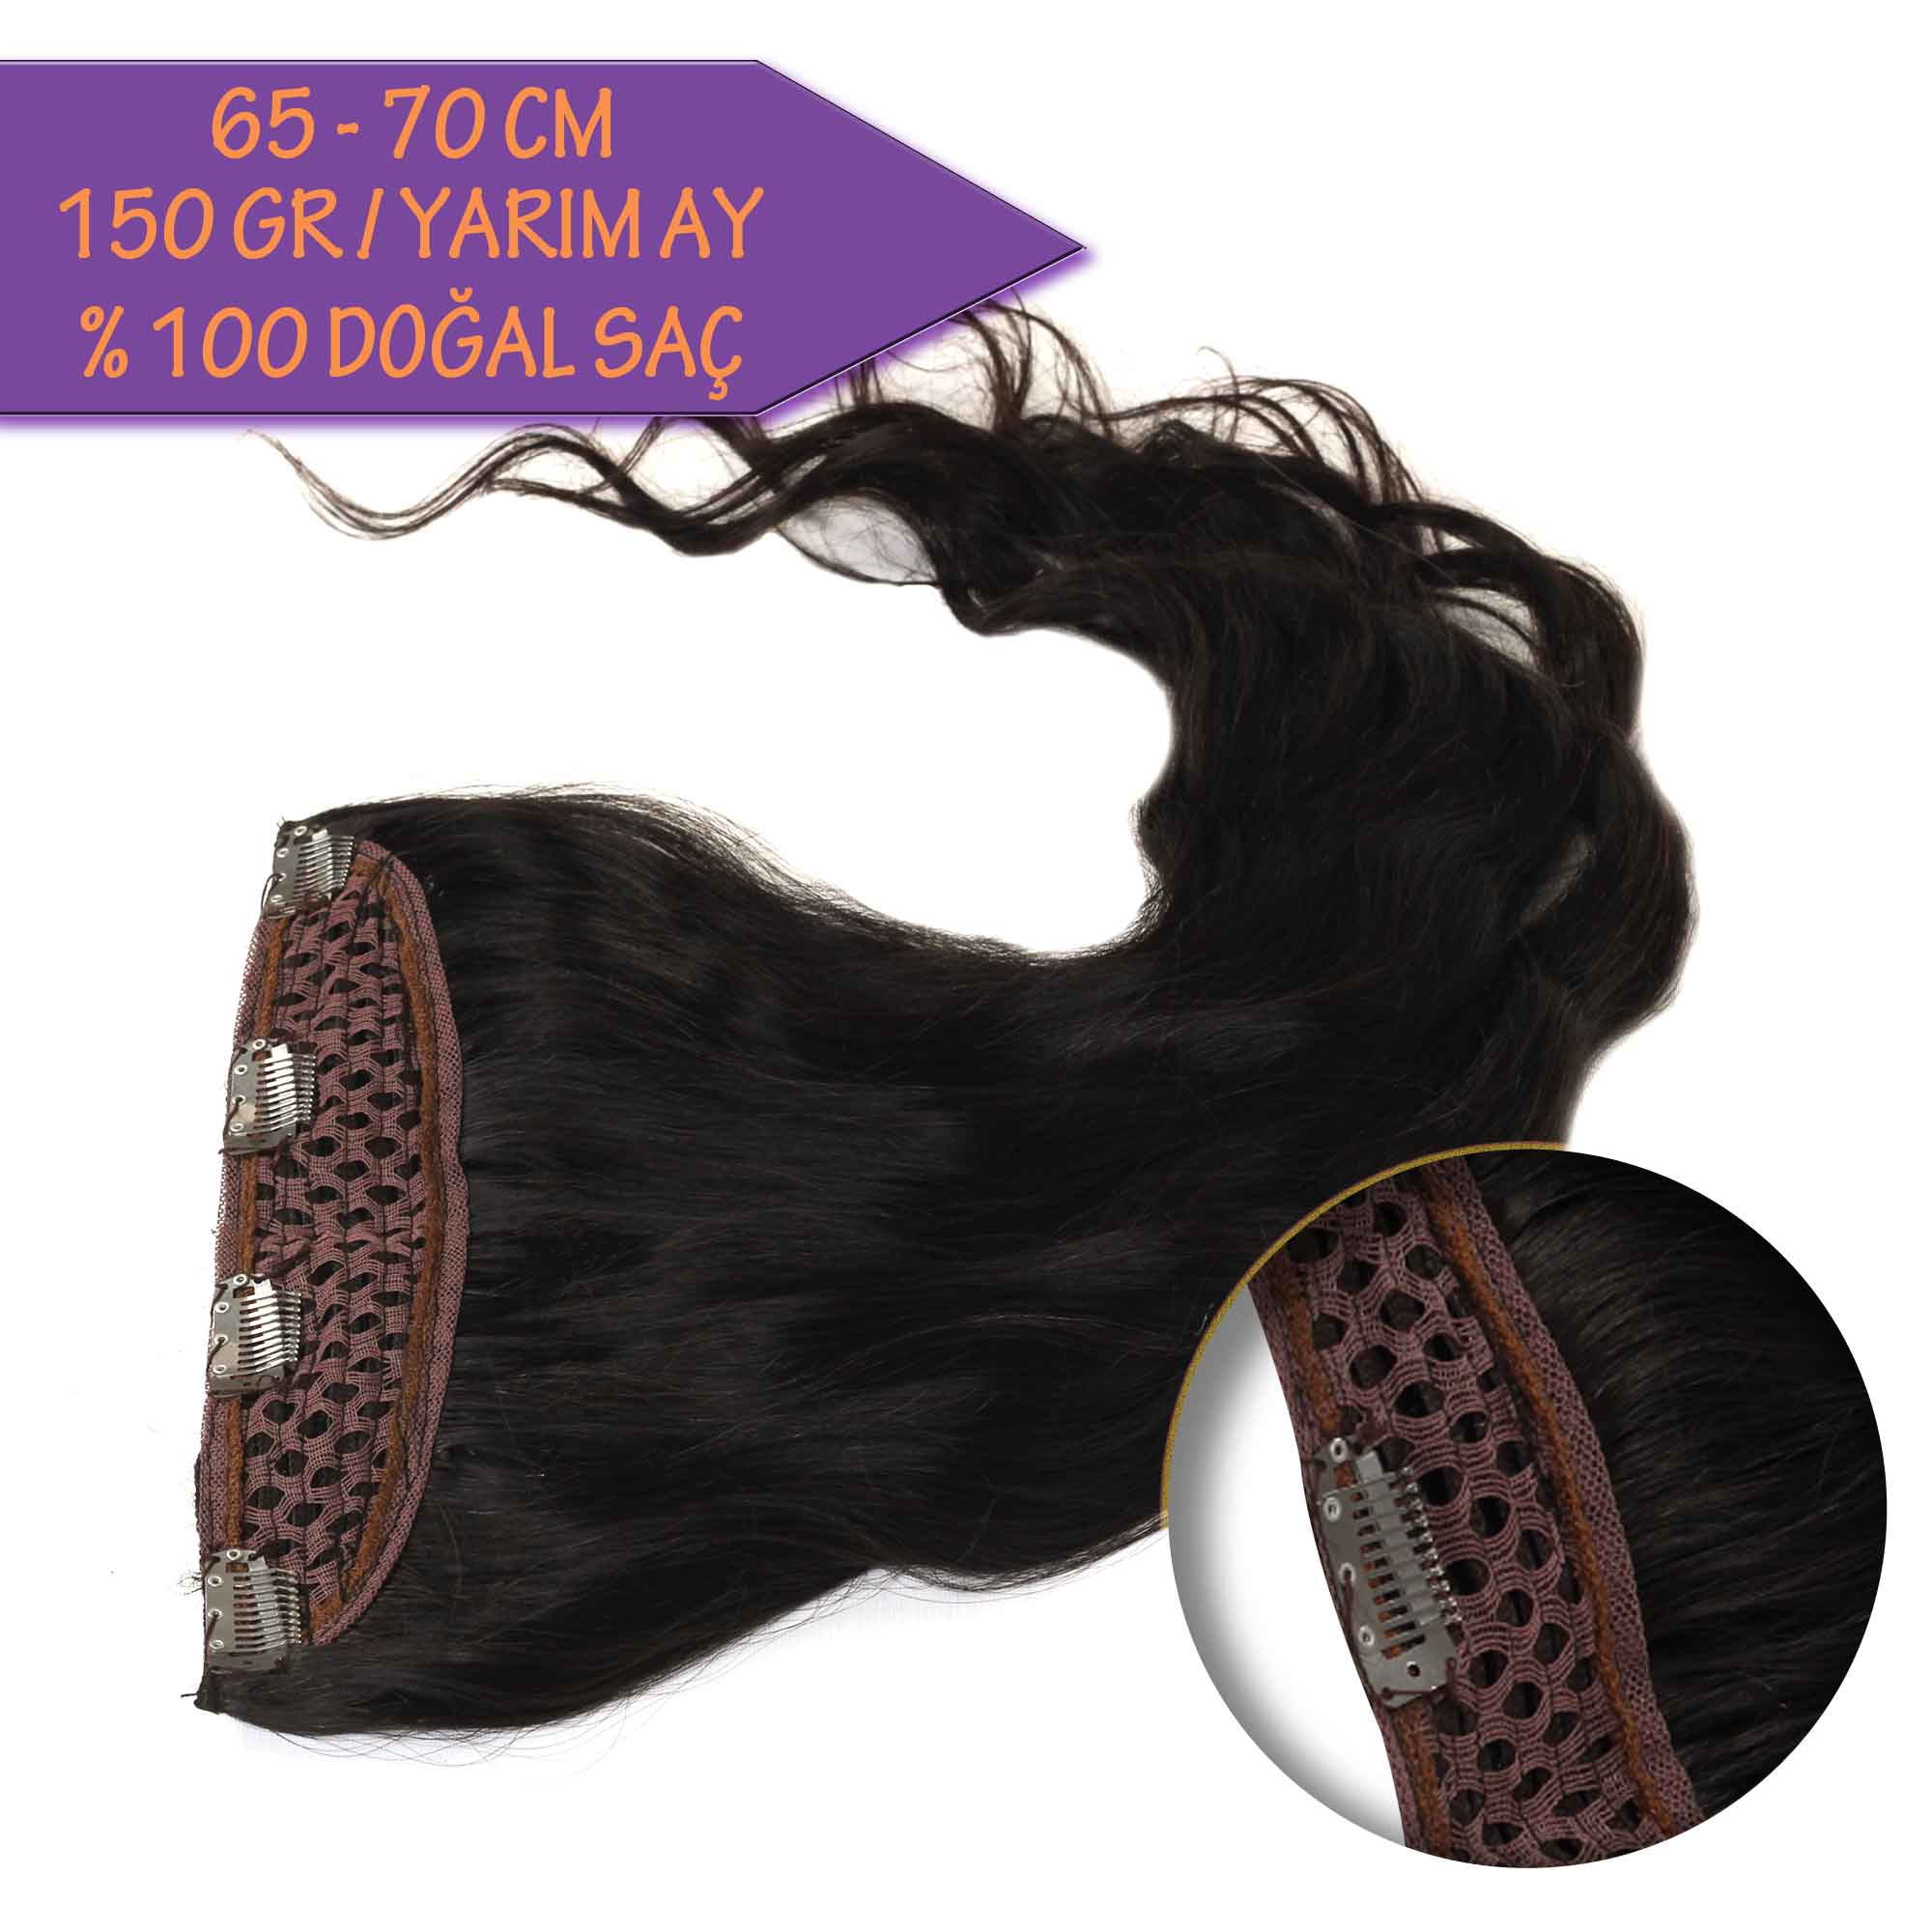 0 Dogal Sac Yarim Ay Cit Cit Jk70 Dogal Renk 150 Gram Aytug Peruk Hair